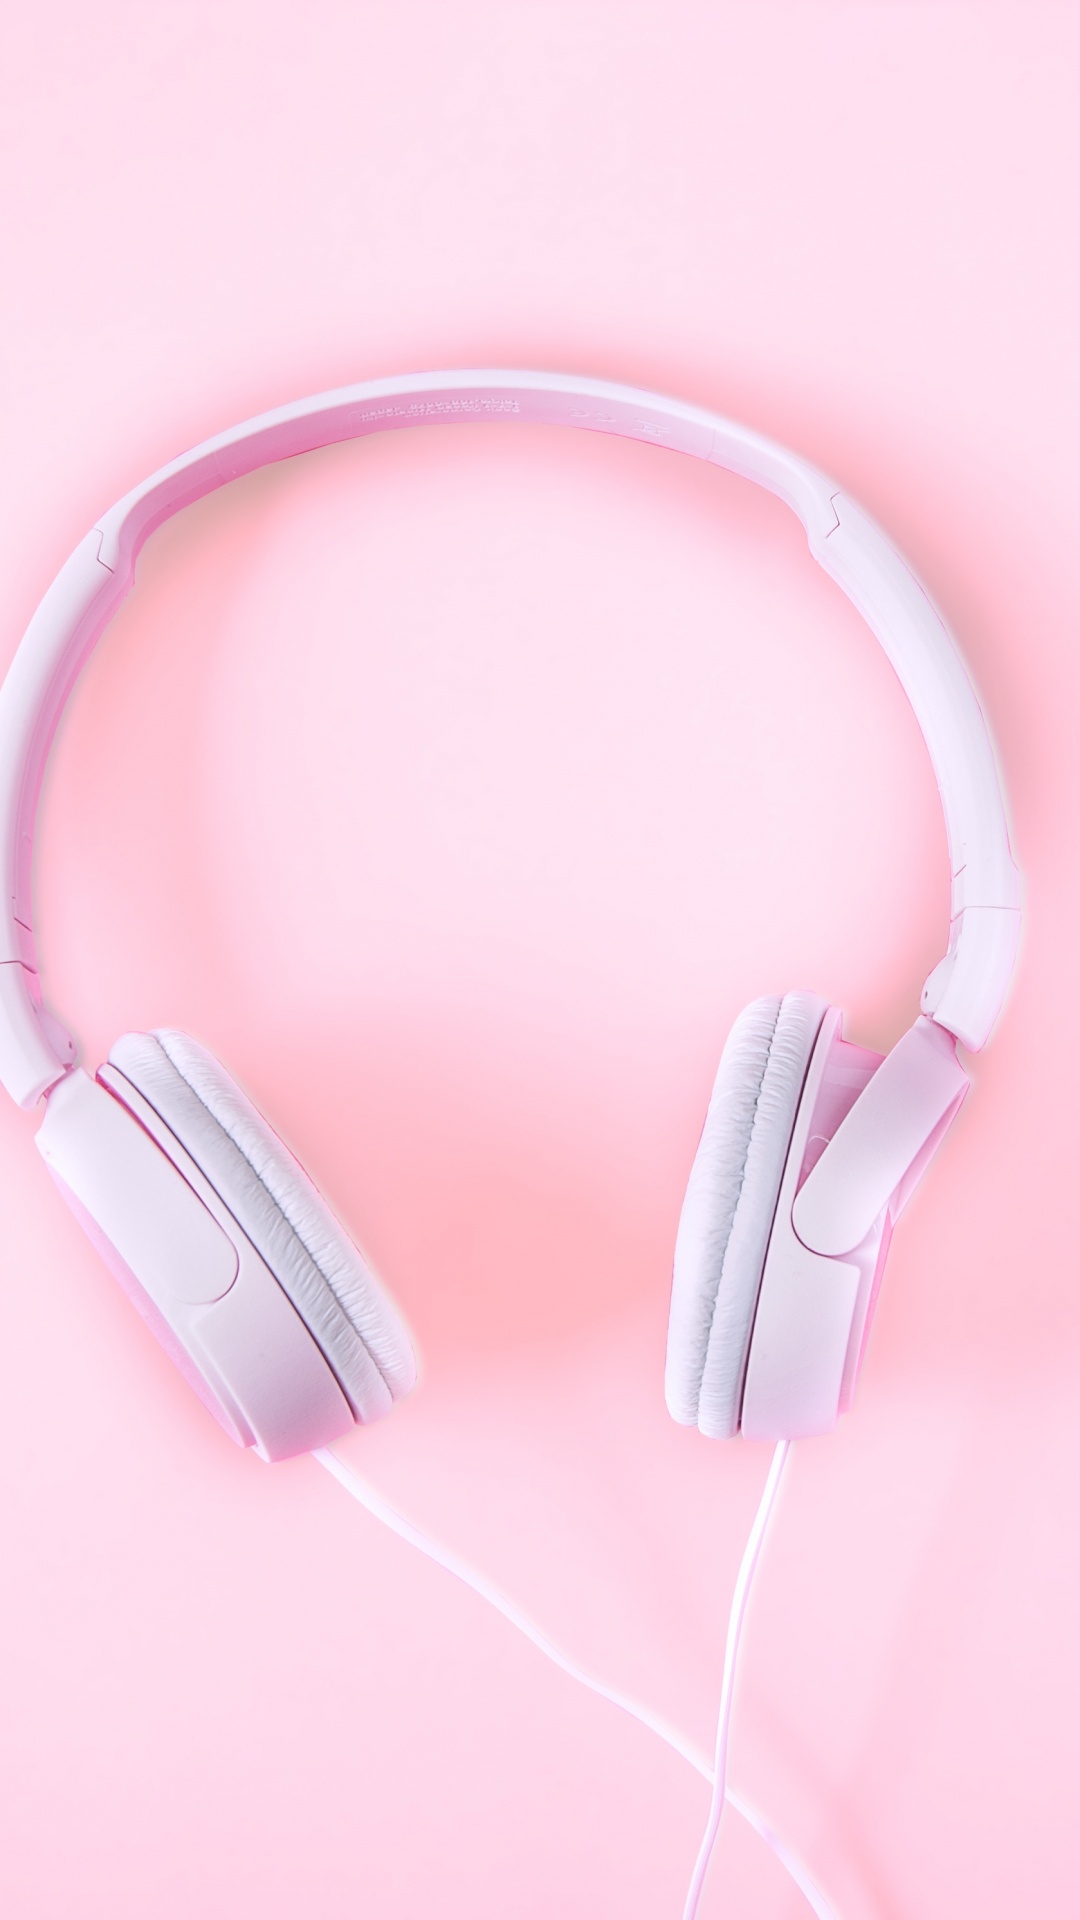 粉红色, 音频设备, 小工具, 耳朵, 电子设备 壁纸 1080x1920 允许